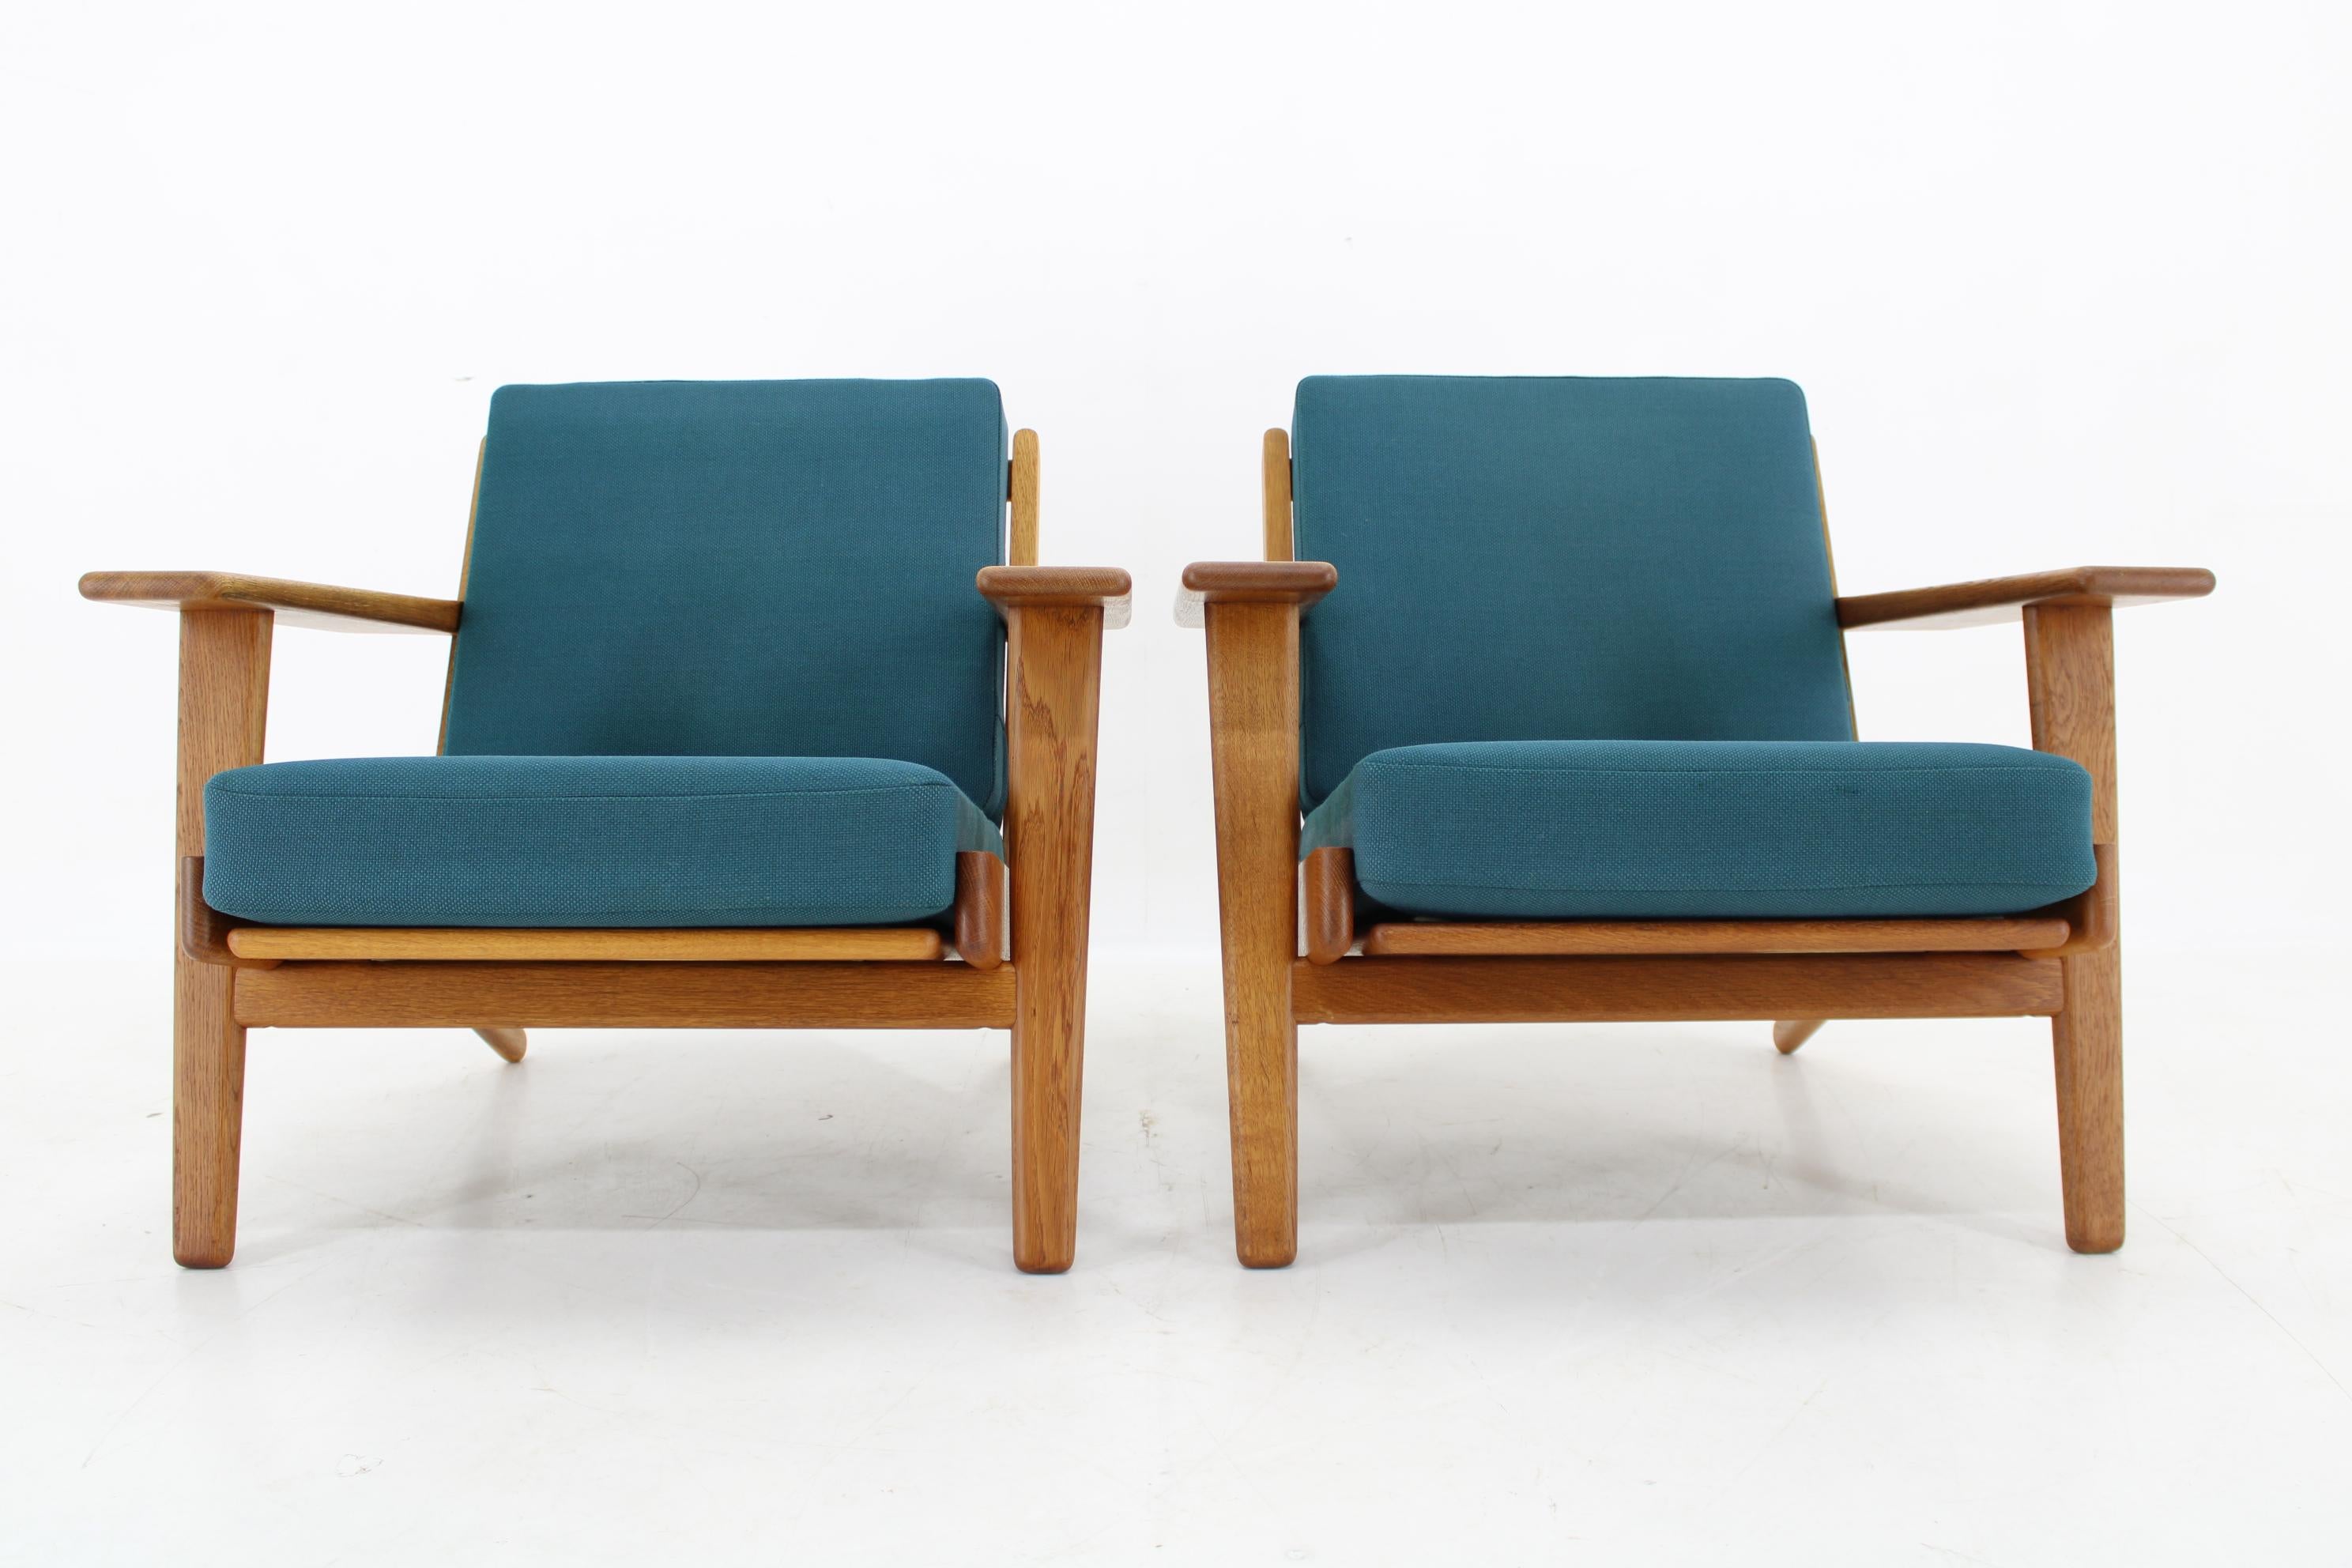 - Die Holzteile wurden aufgearbeitet und beide Stühle sind daher in einem sehr guten Zustand
- Die originalen Federkissen in gutem Originalzustand 